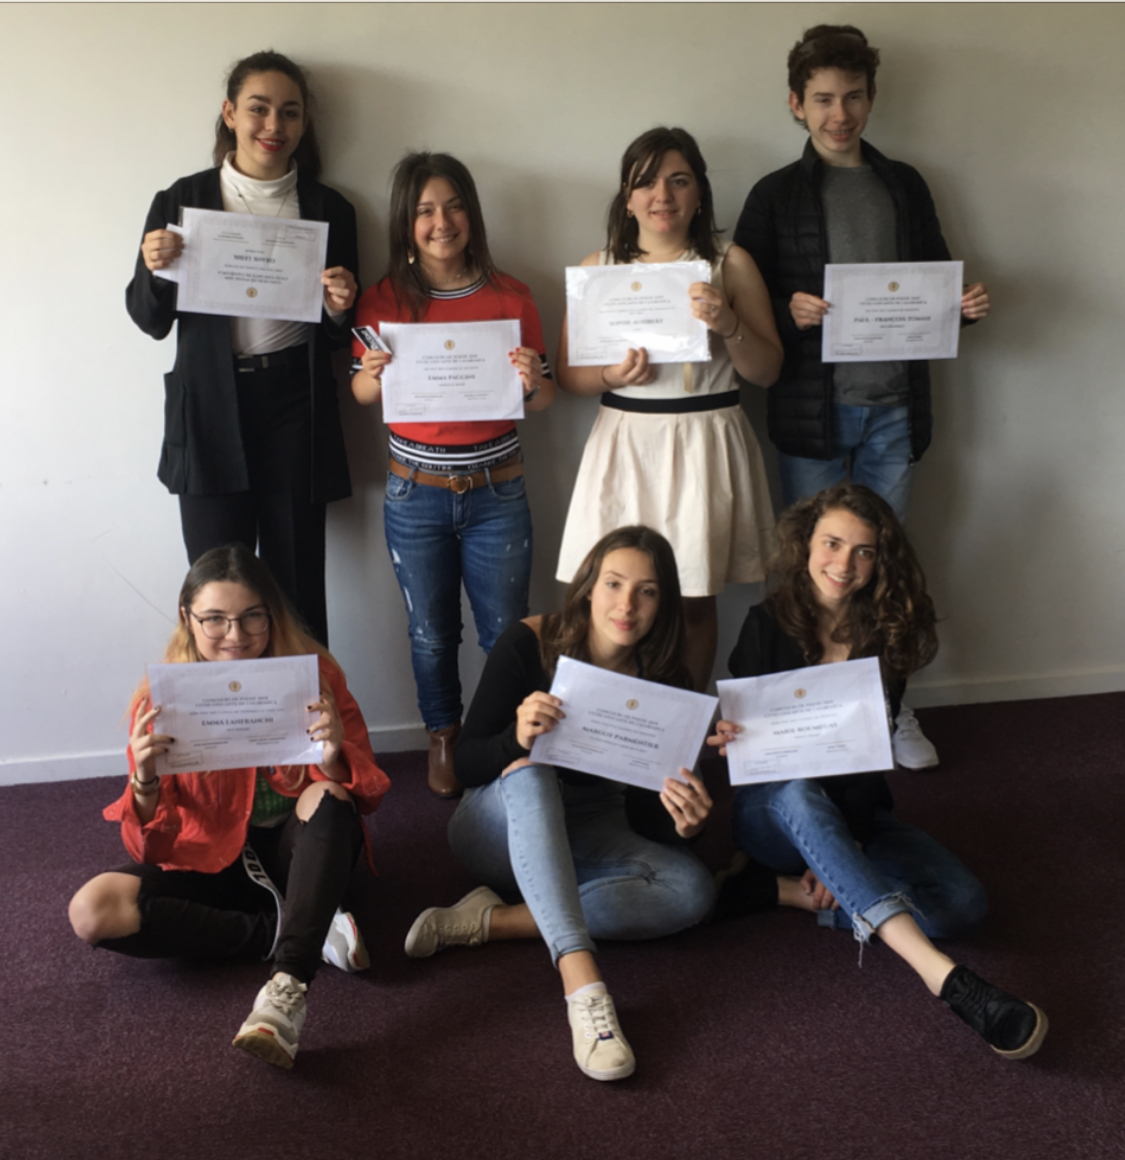 Le rêve en poésie. Neuf élèves primés au concours poétique du lycée Casabianca de Bastia 